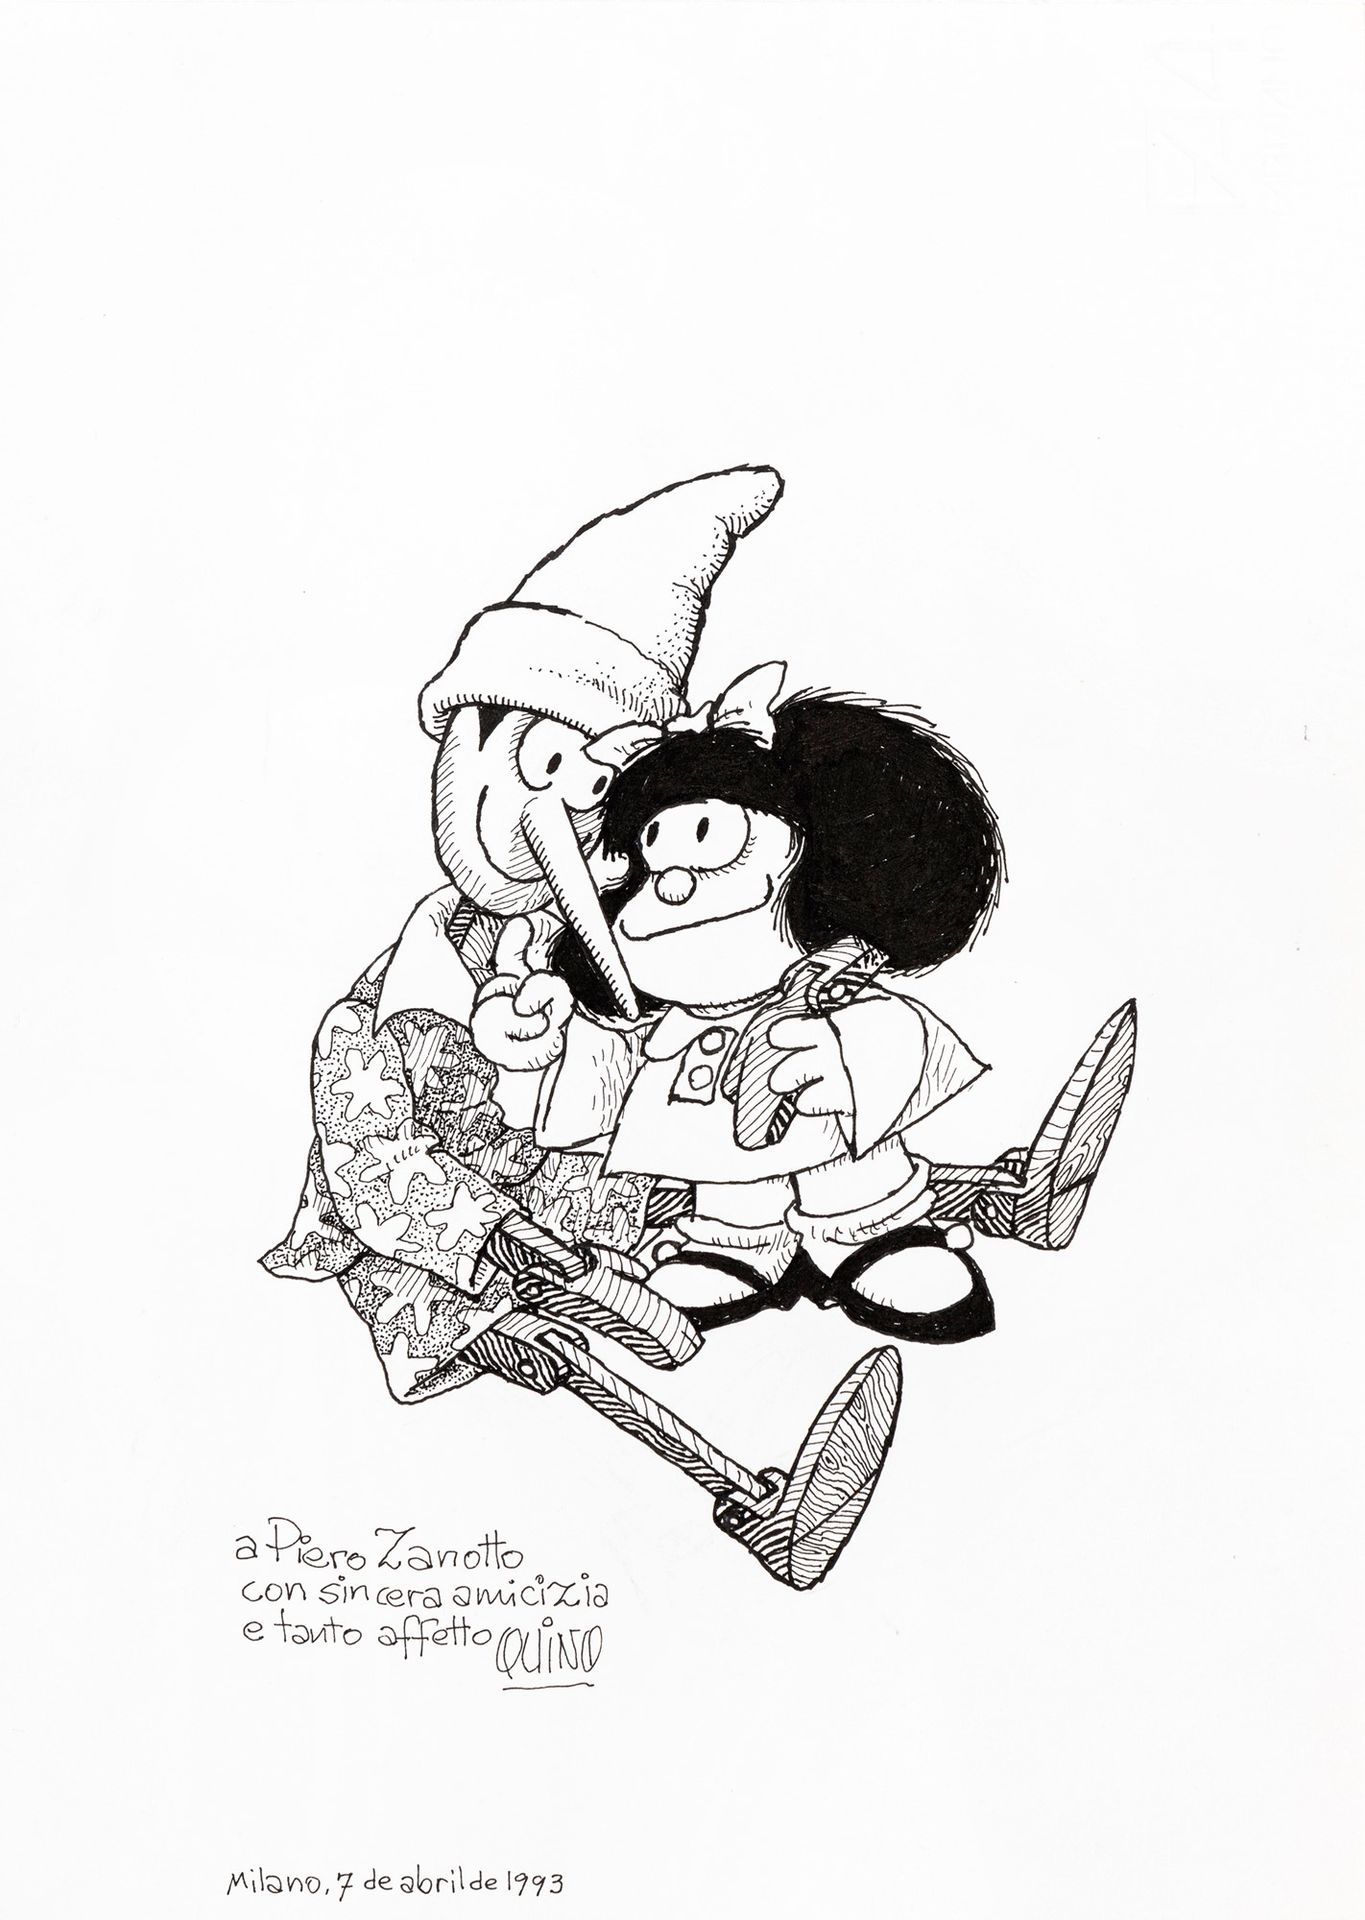 Quino (Joaquín Lavado) Pinocchio e Mafalda, 1993

Bleistift und Tinte auf dünnem&hellip;